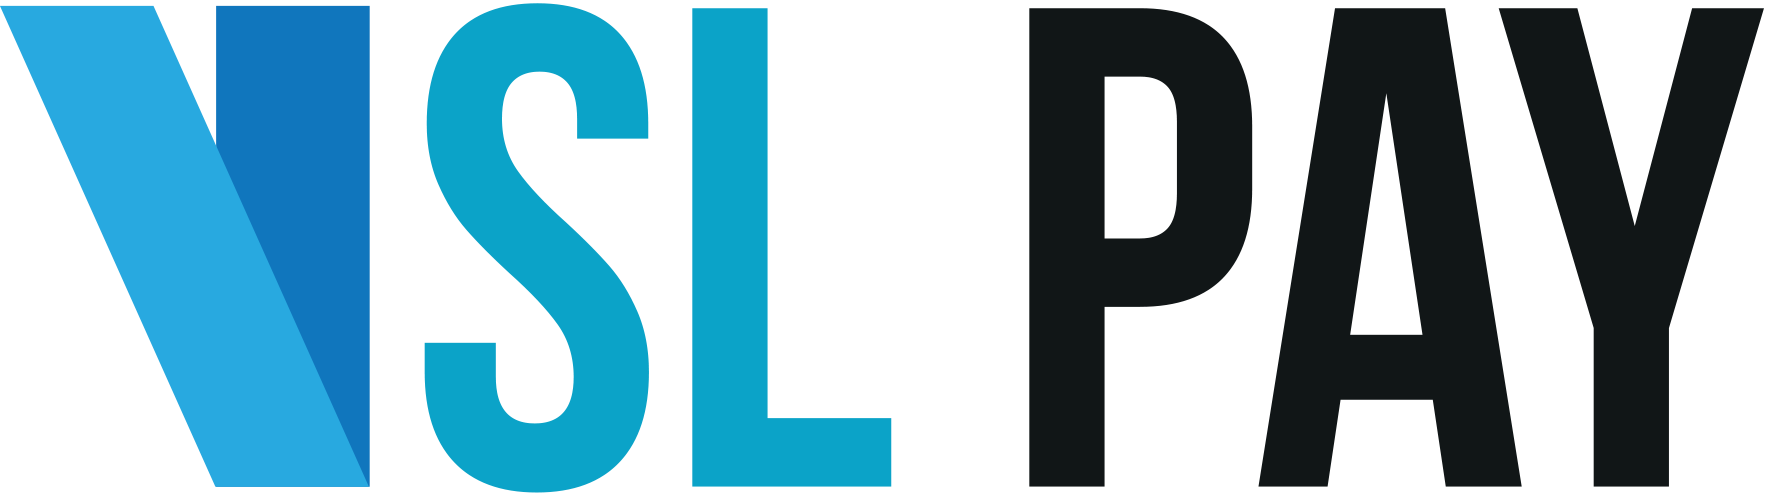 VSL Pay Logo